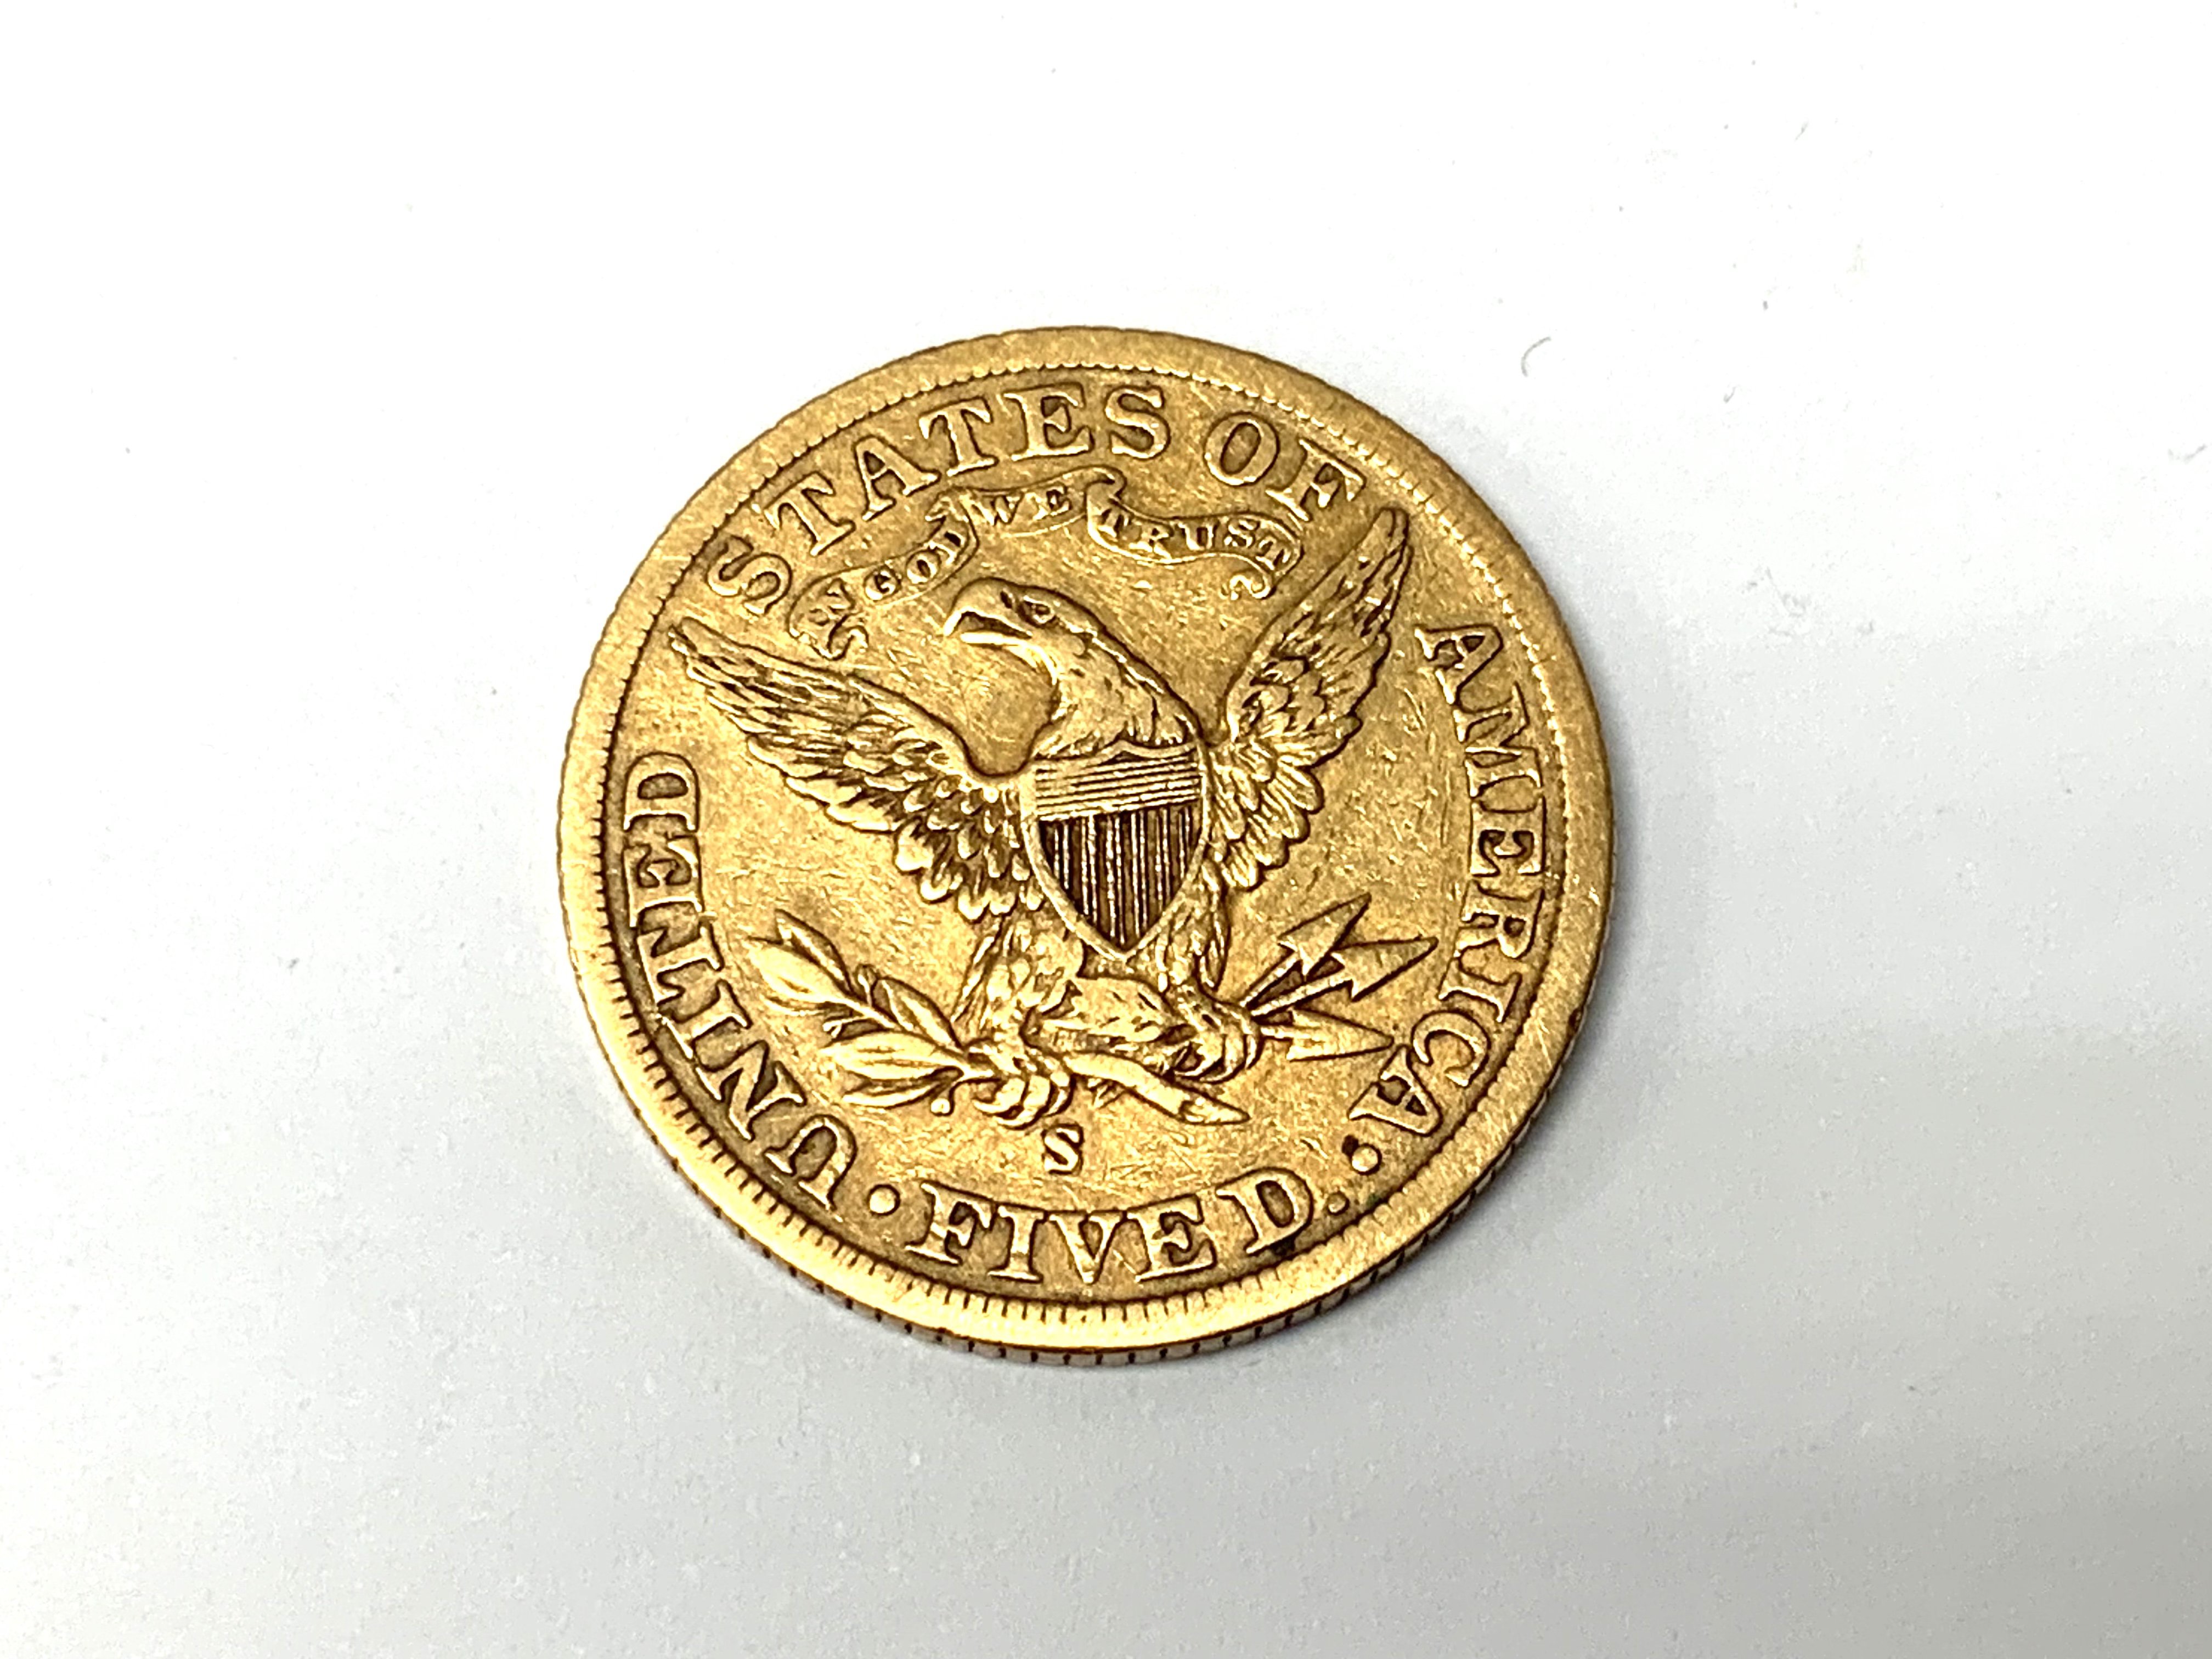 1902 San Francisco Half eagle gold coin. (A) - Image 2 of 2